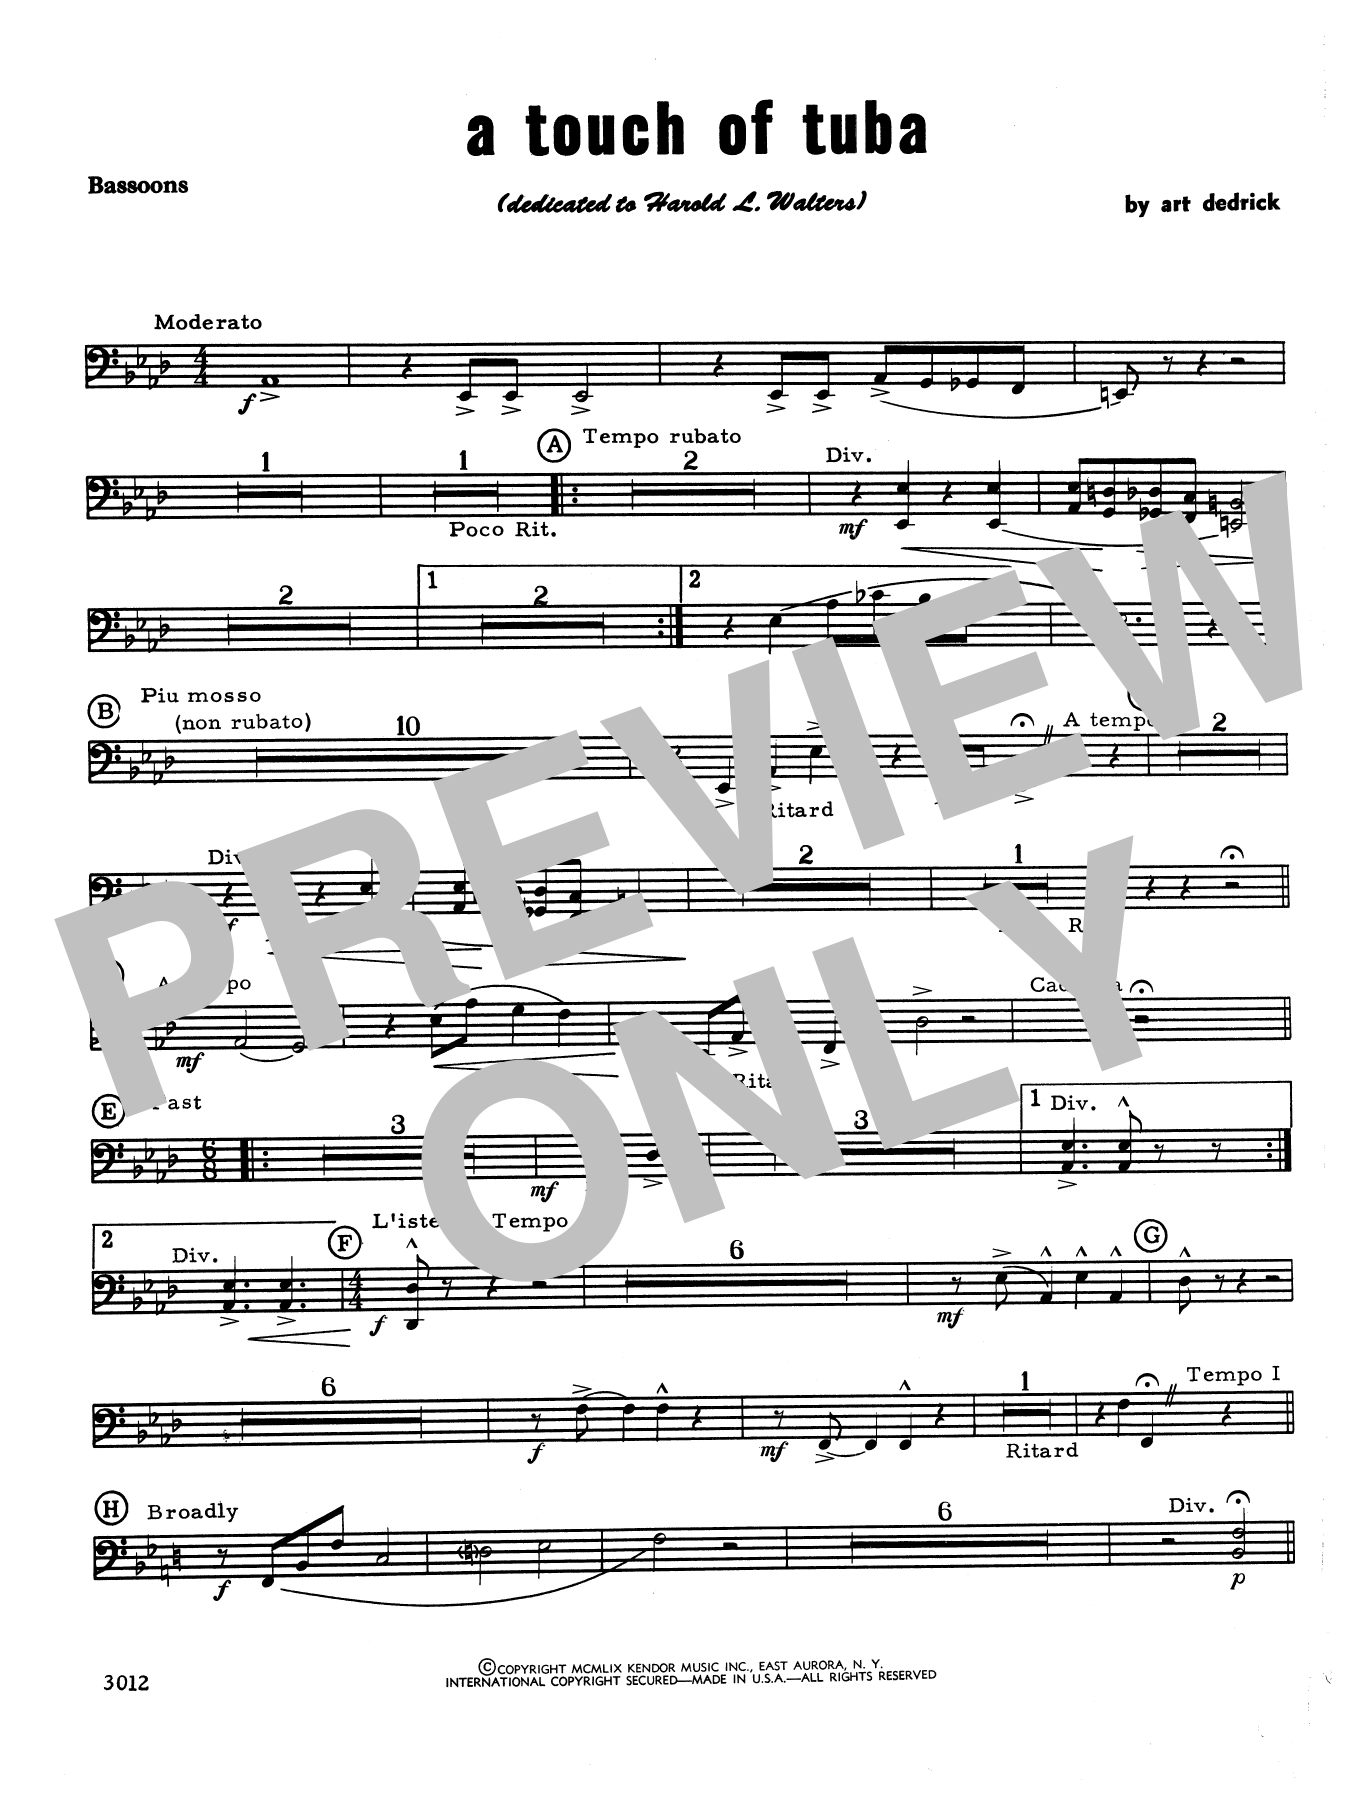 Download Art Dedrick A Touch Of Tuba - Bassoon Sheet Music